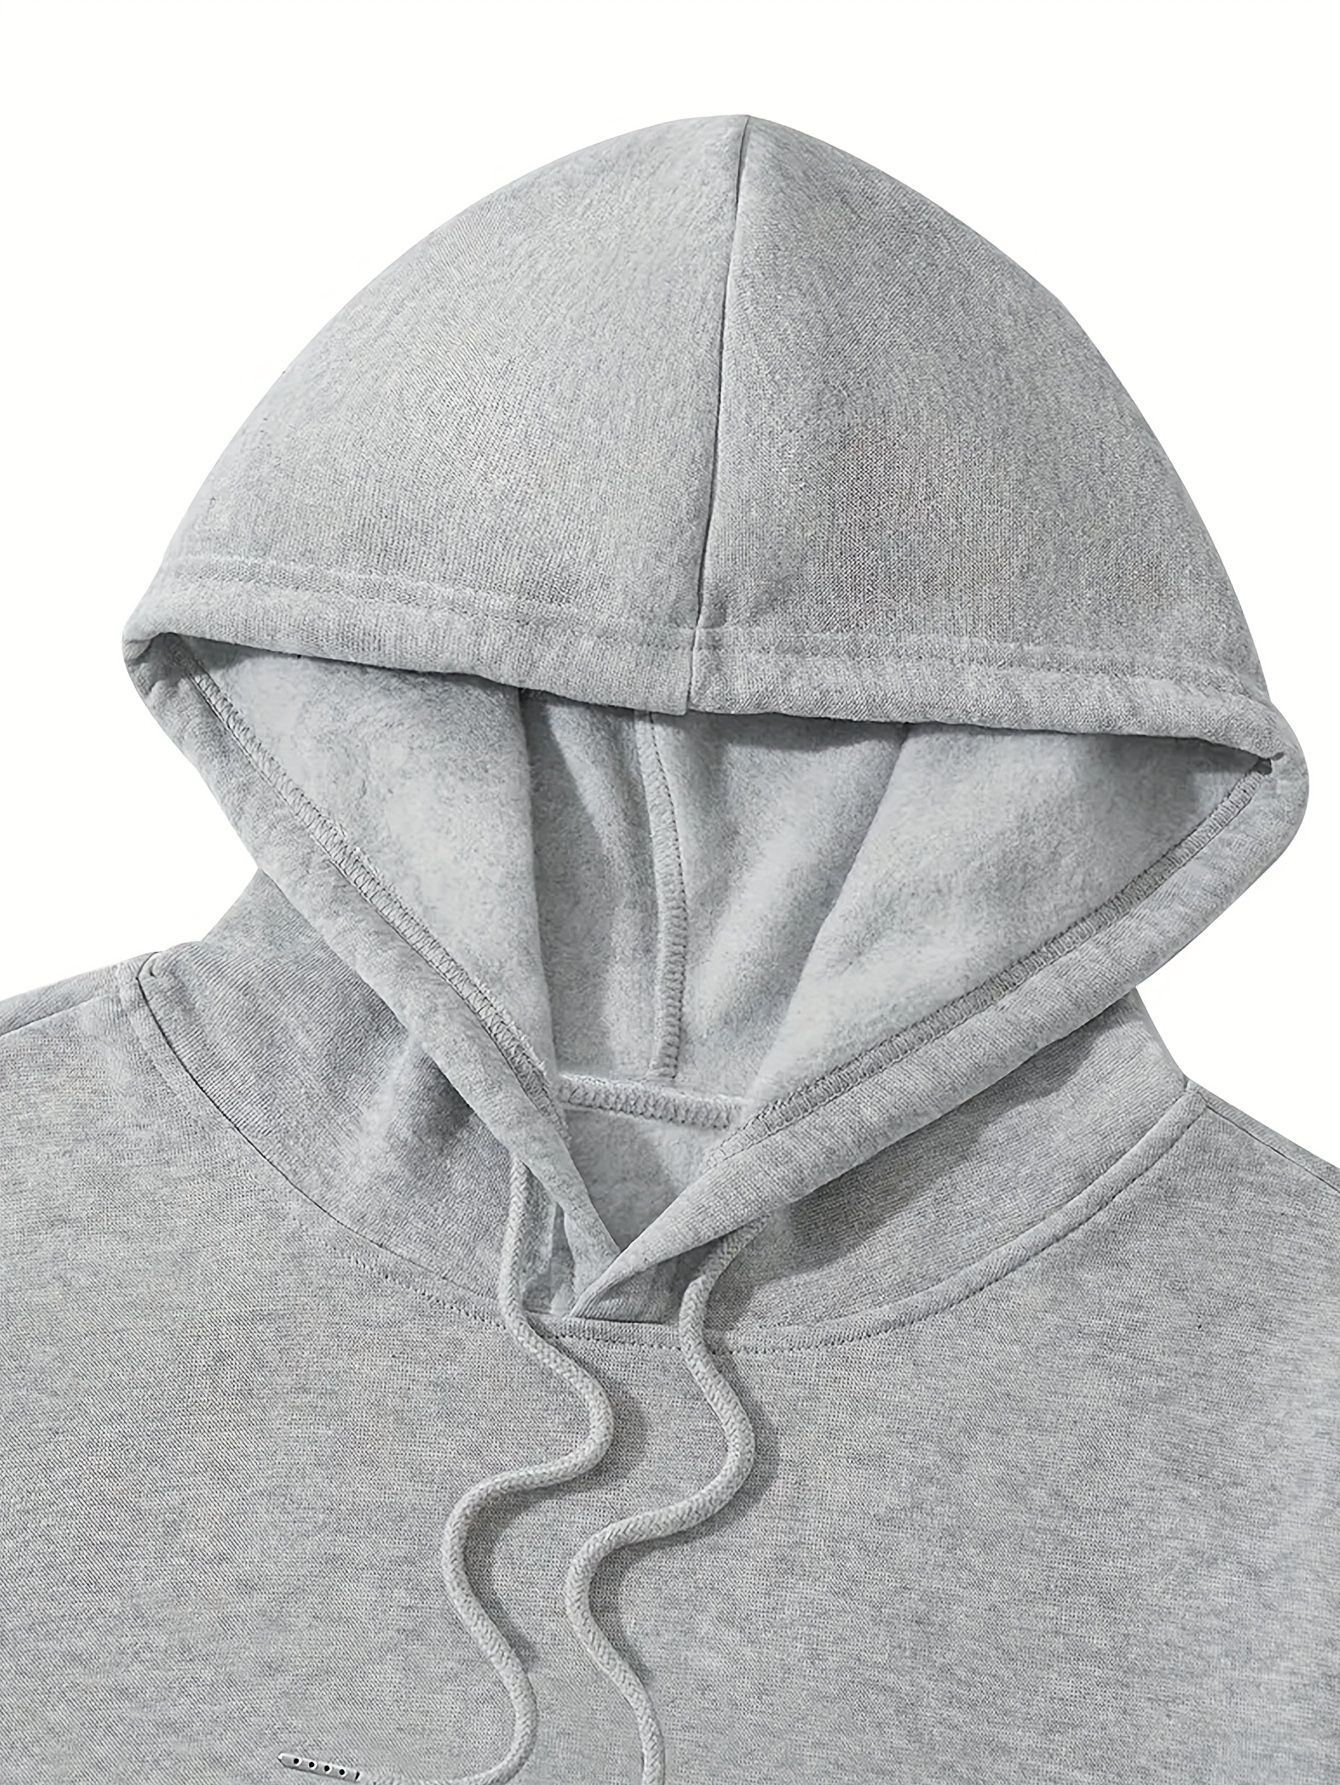 bus pattern warm hoodie with kangaroo pocket mens casual pullover hooded sweatshirt details 3